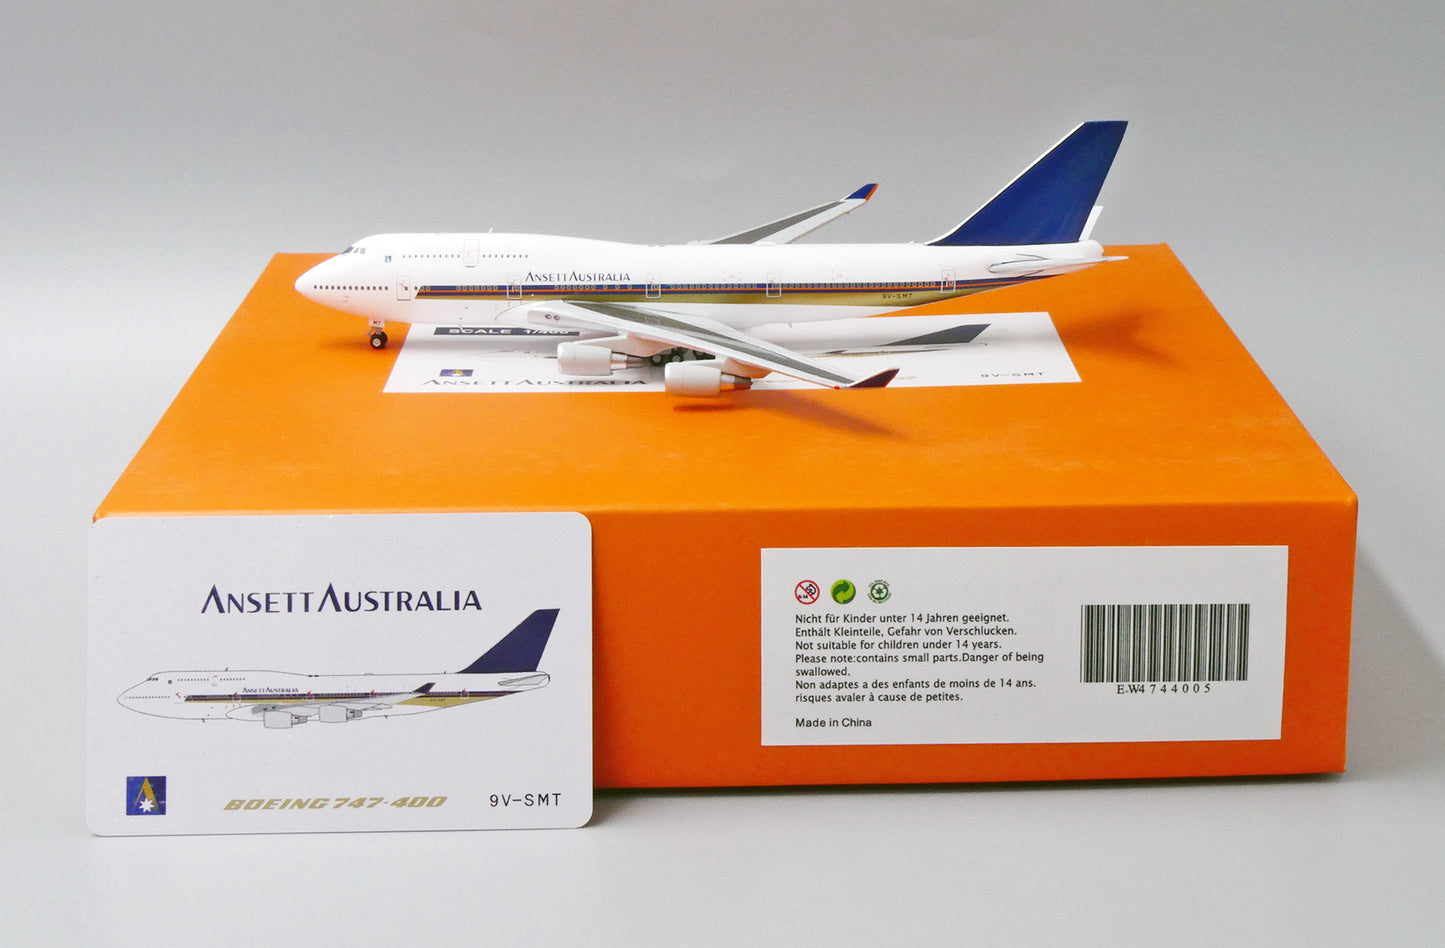 1/400 Ansett Australia B 747-400 "Singapore Cheatline" JC Wings EW4744005